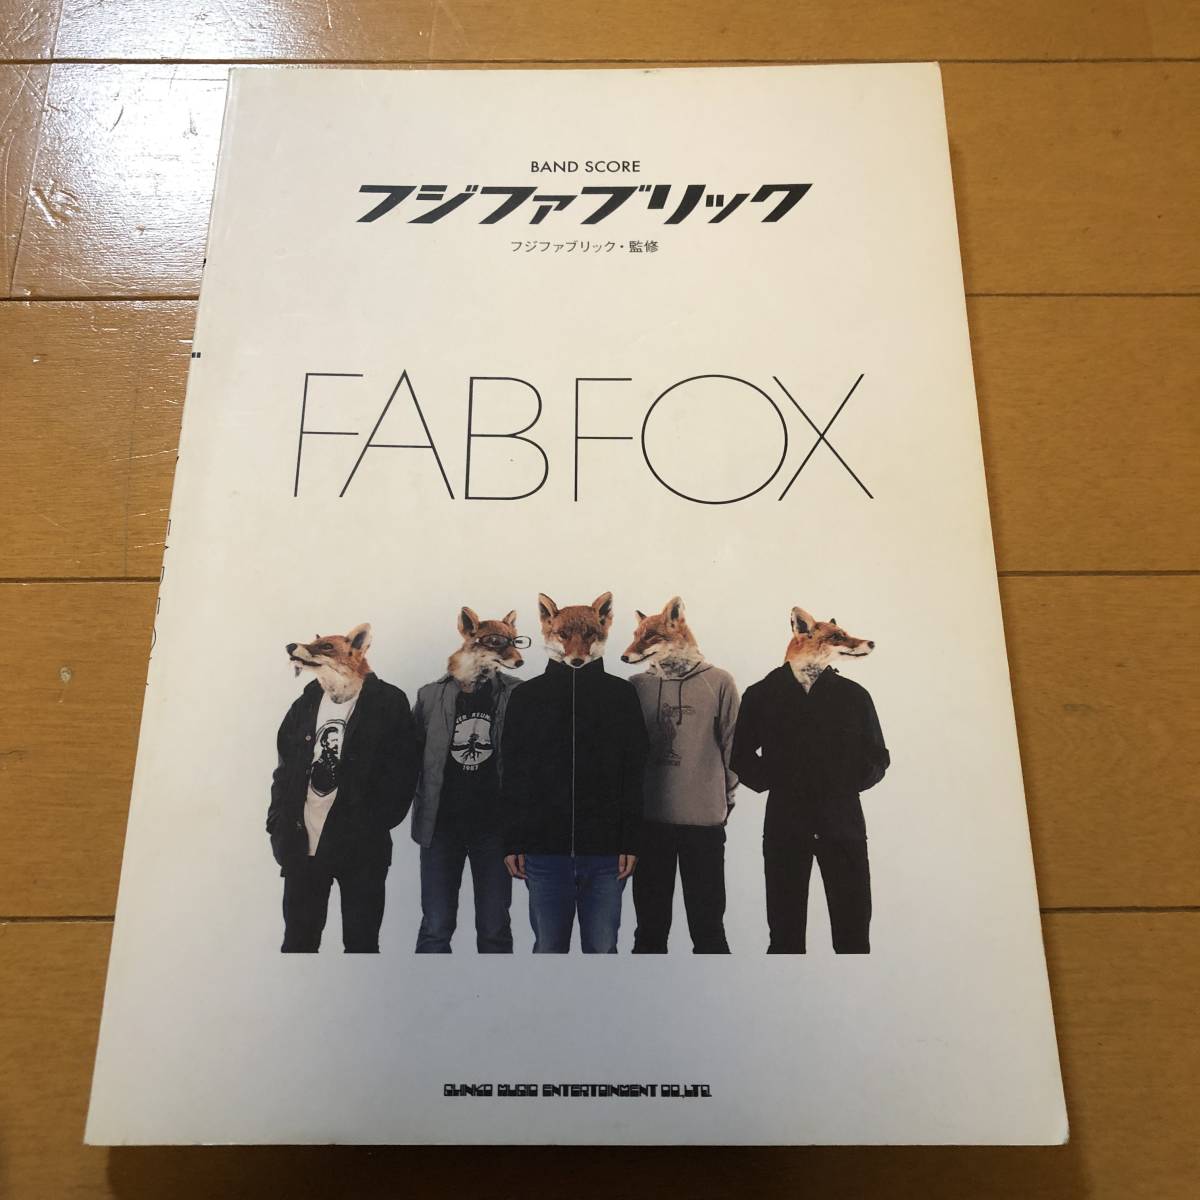 フジファブリック 500円引きクーポン FAB FOX スコア 送料無料 激安 お買い得 キ゛フト